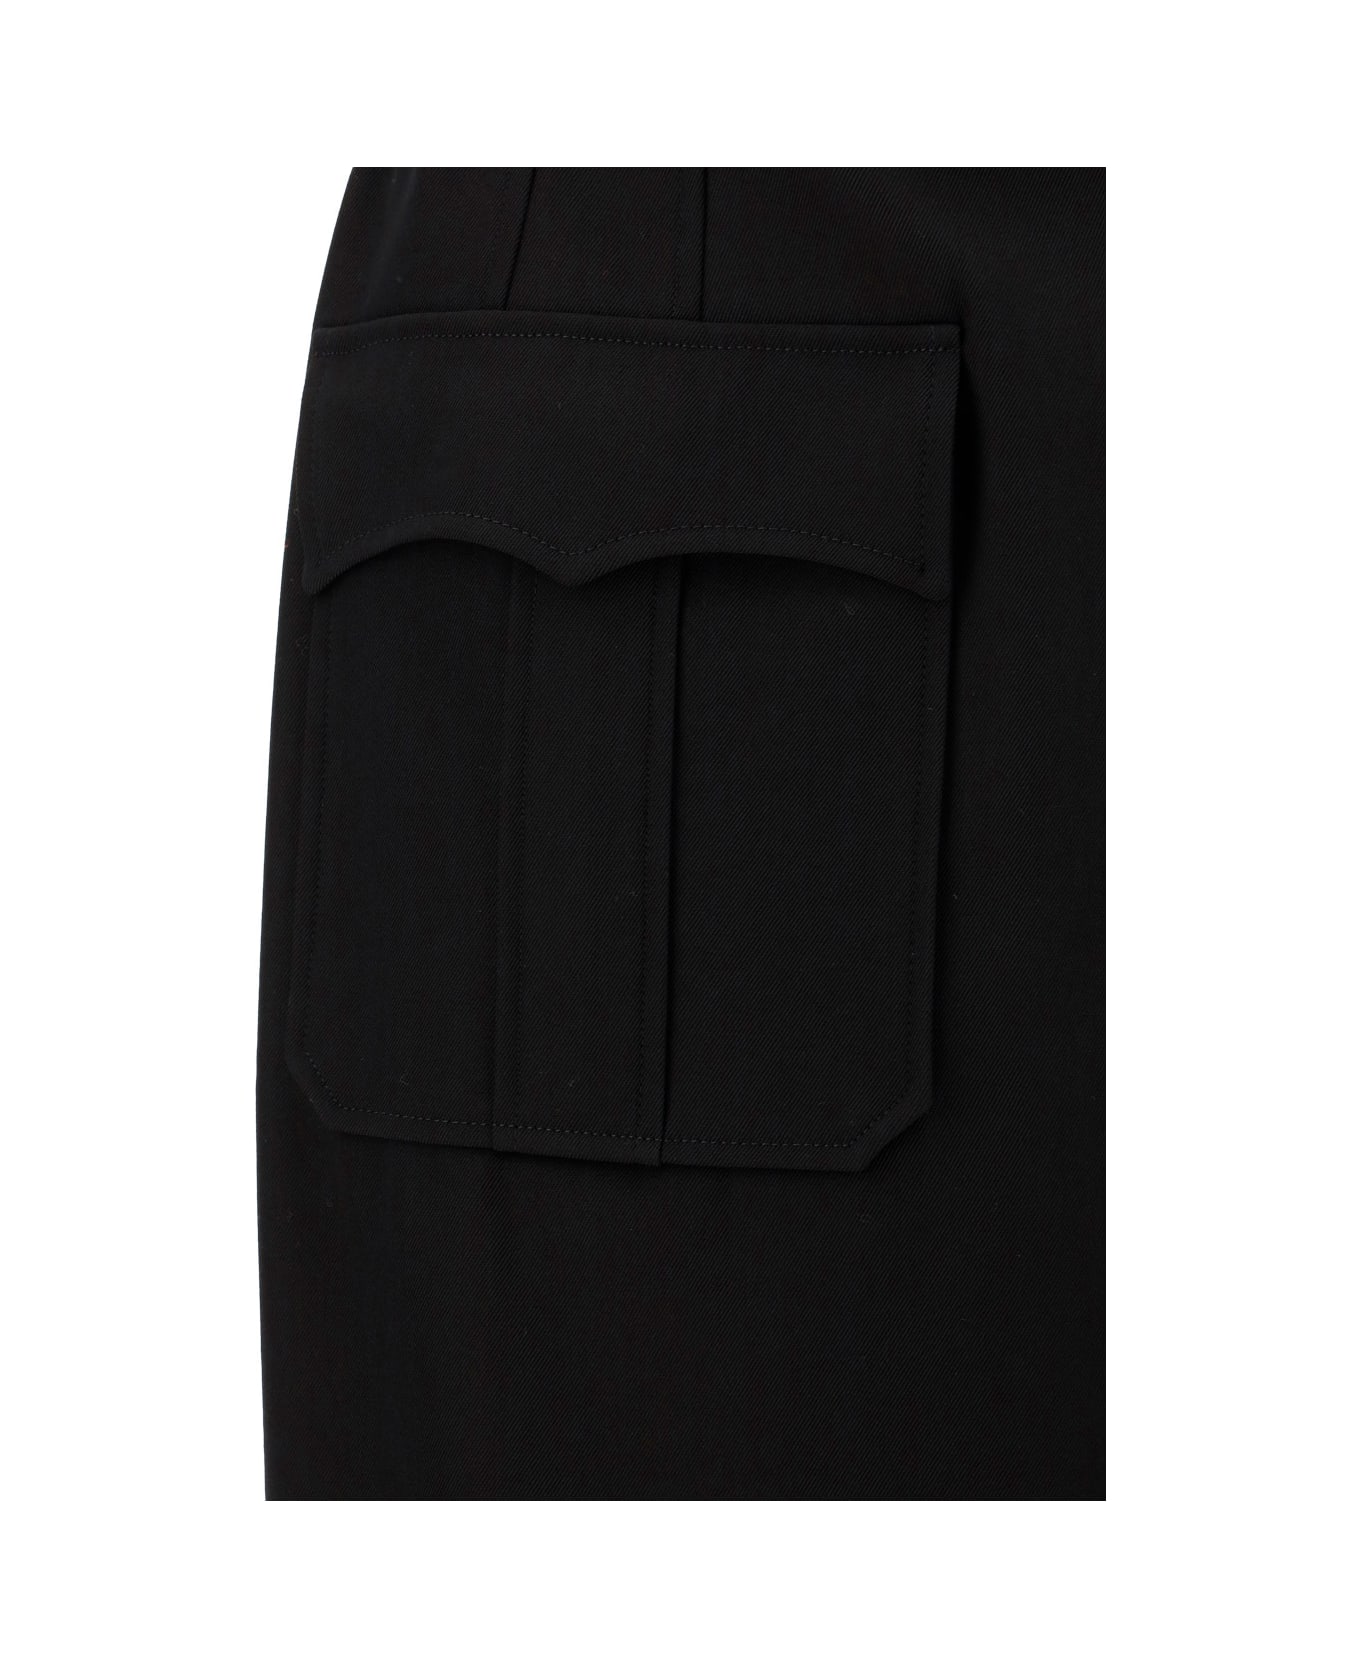 Alexander McQueen Skirt - Black スカート